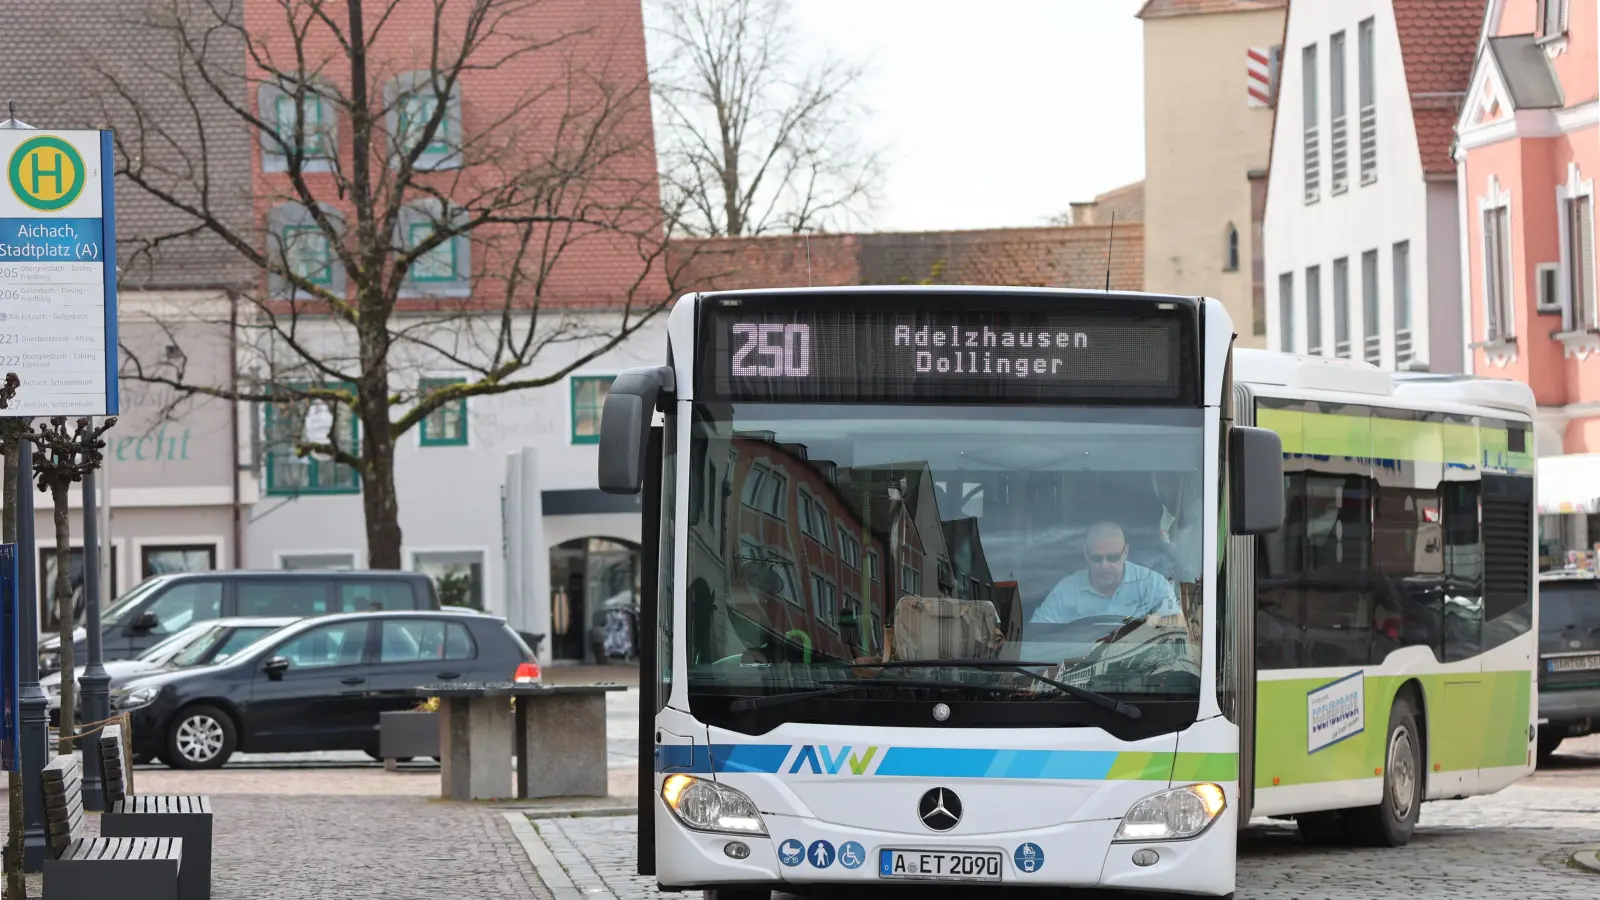 <b>Eigentlich sollten die AVV-Busse</b> ab dem 1. Juli vom Aichacher Stadtplatz verbannt werden. Nachdem der Augsburger Verkehrsverbund (AVV) dafür nun deutlich mehr Geld von der Stadt will, verschiebt sich das ganze Projekt zumindest.  (Foto: Erich Hoffmann)